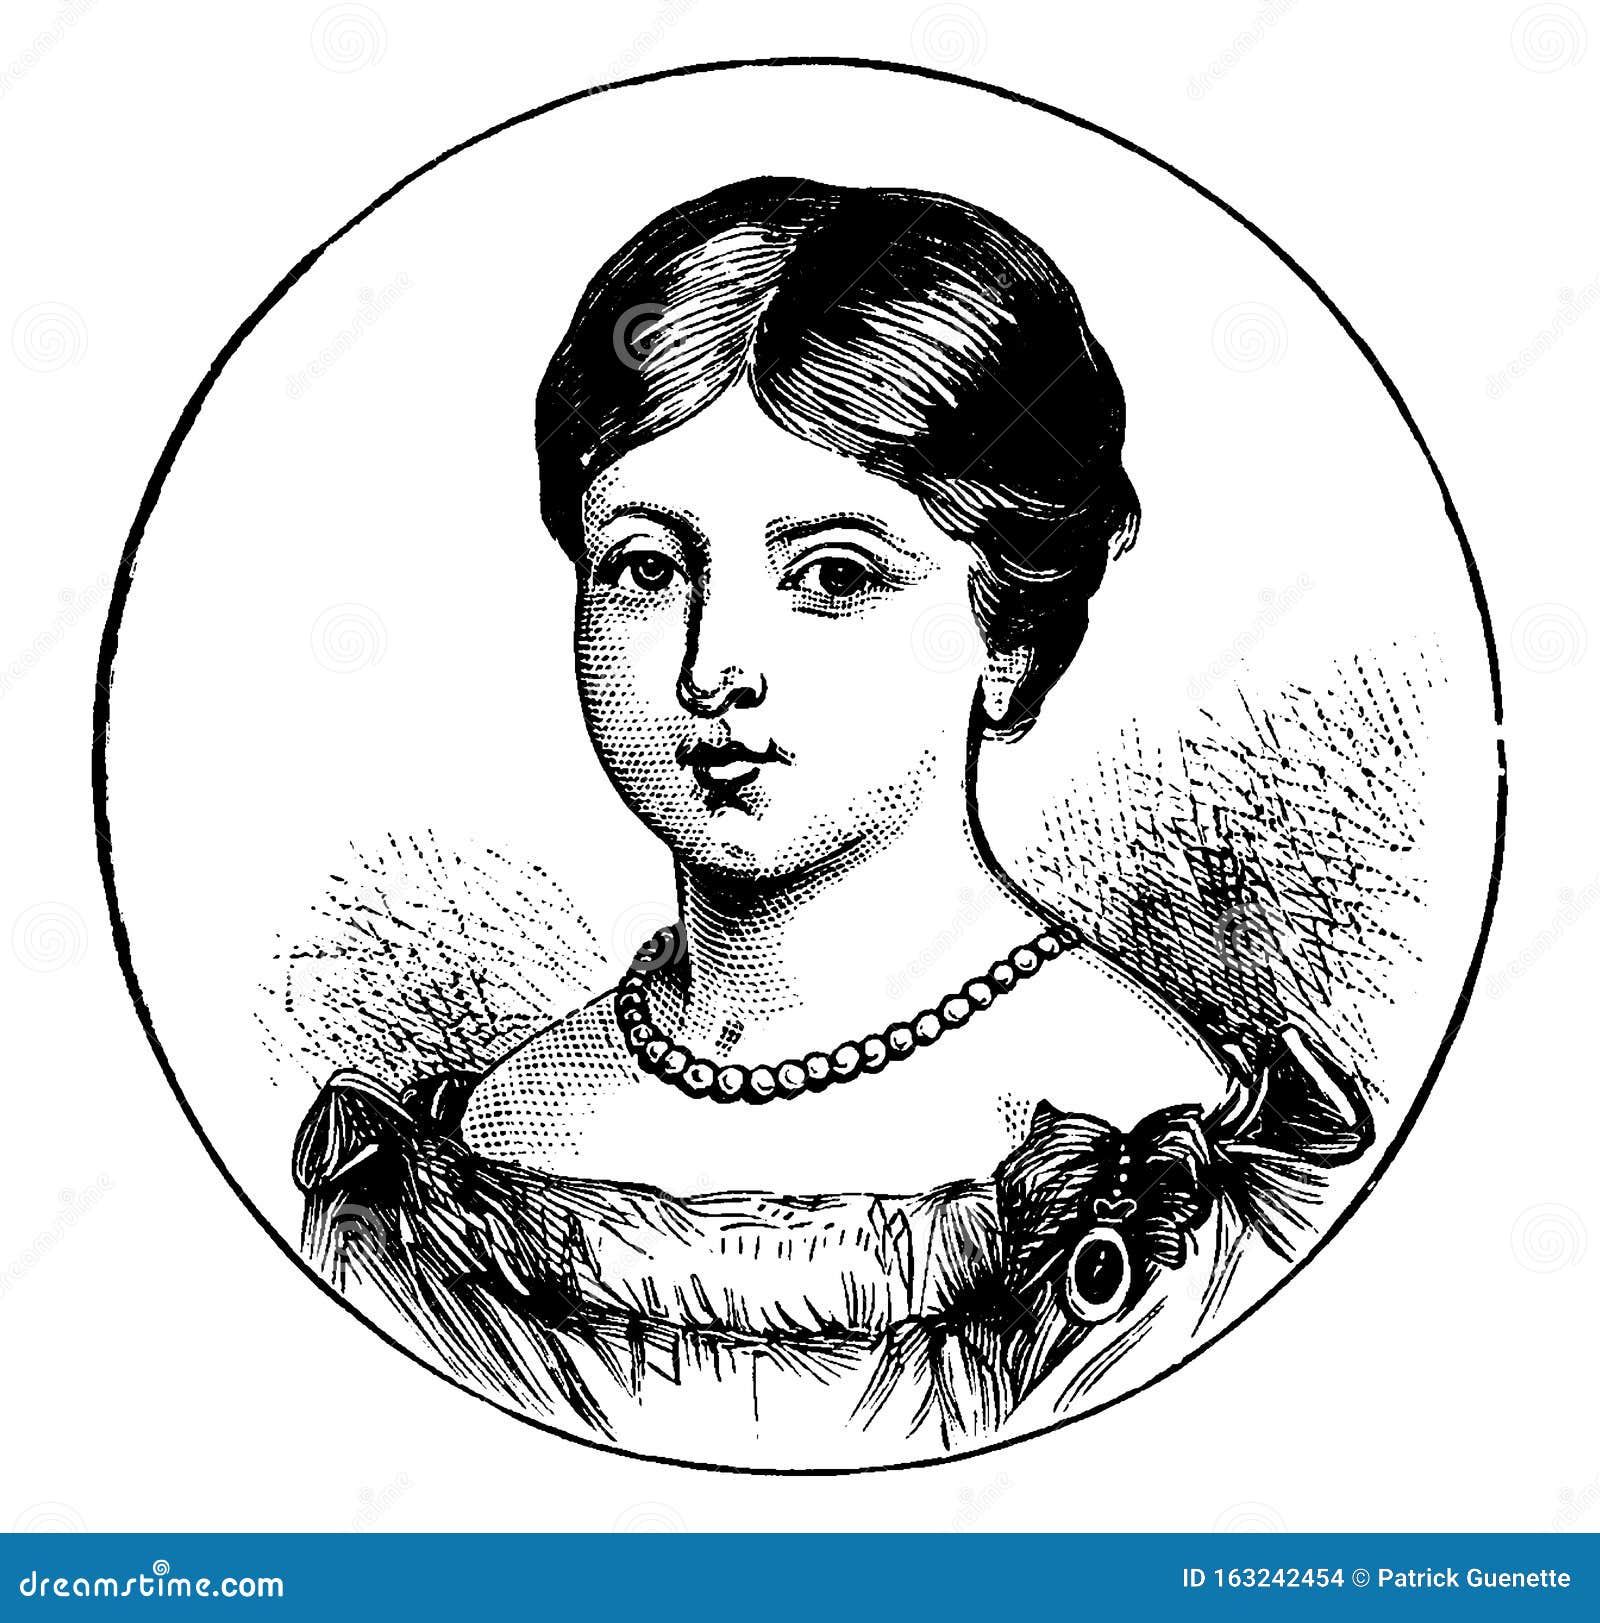 Queen Victoria | Caricature of Queen Victoria. Image source:… | Flickr